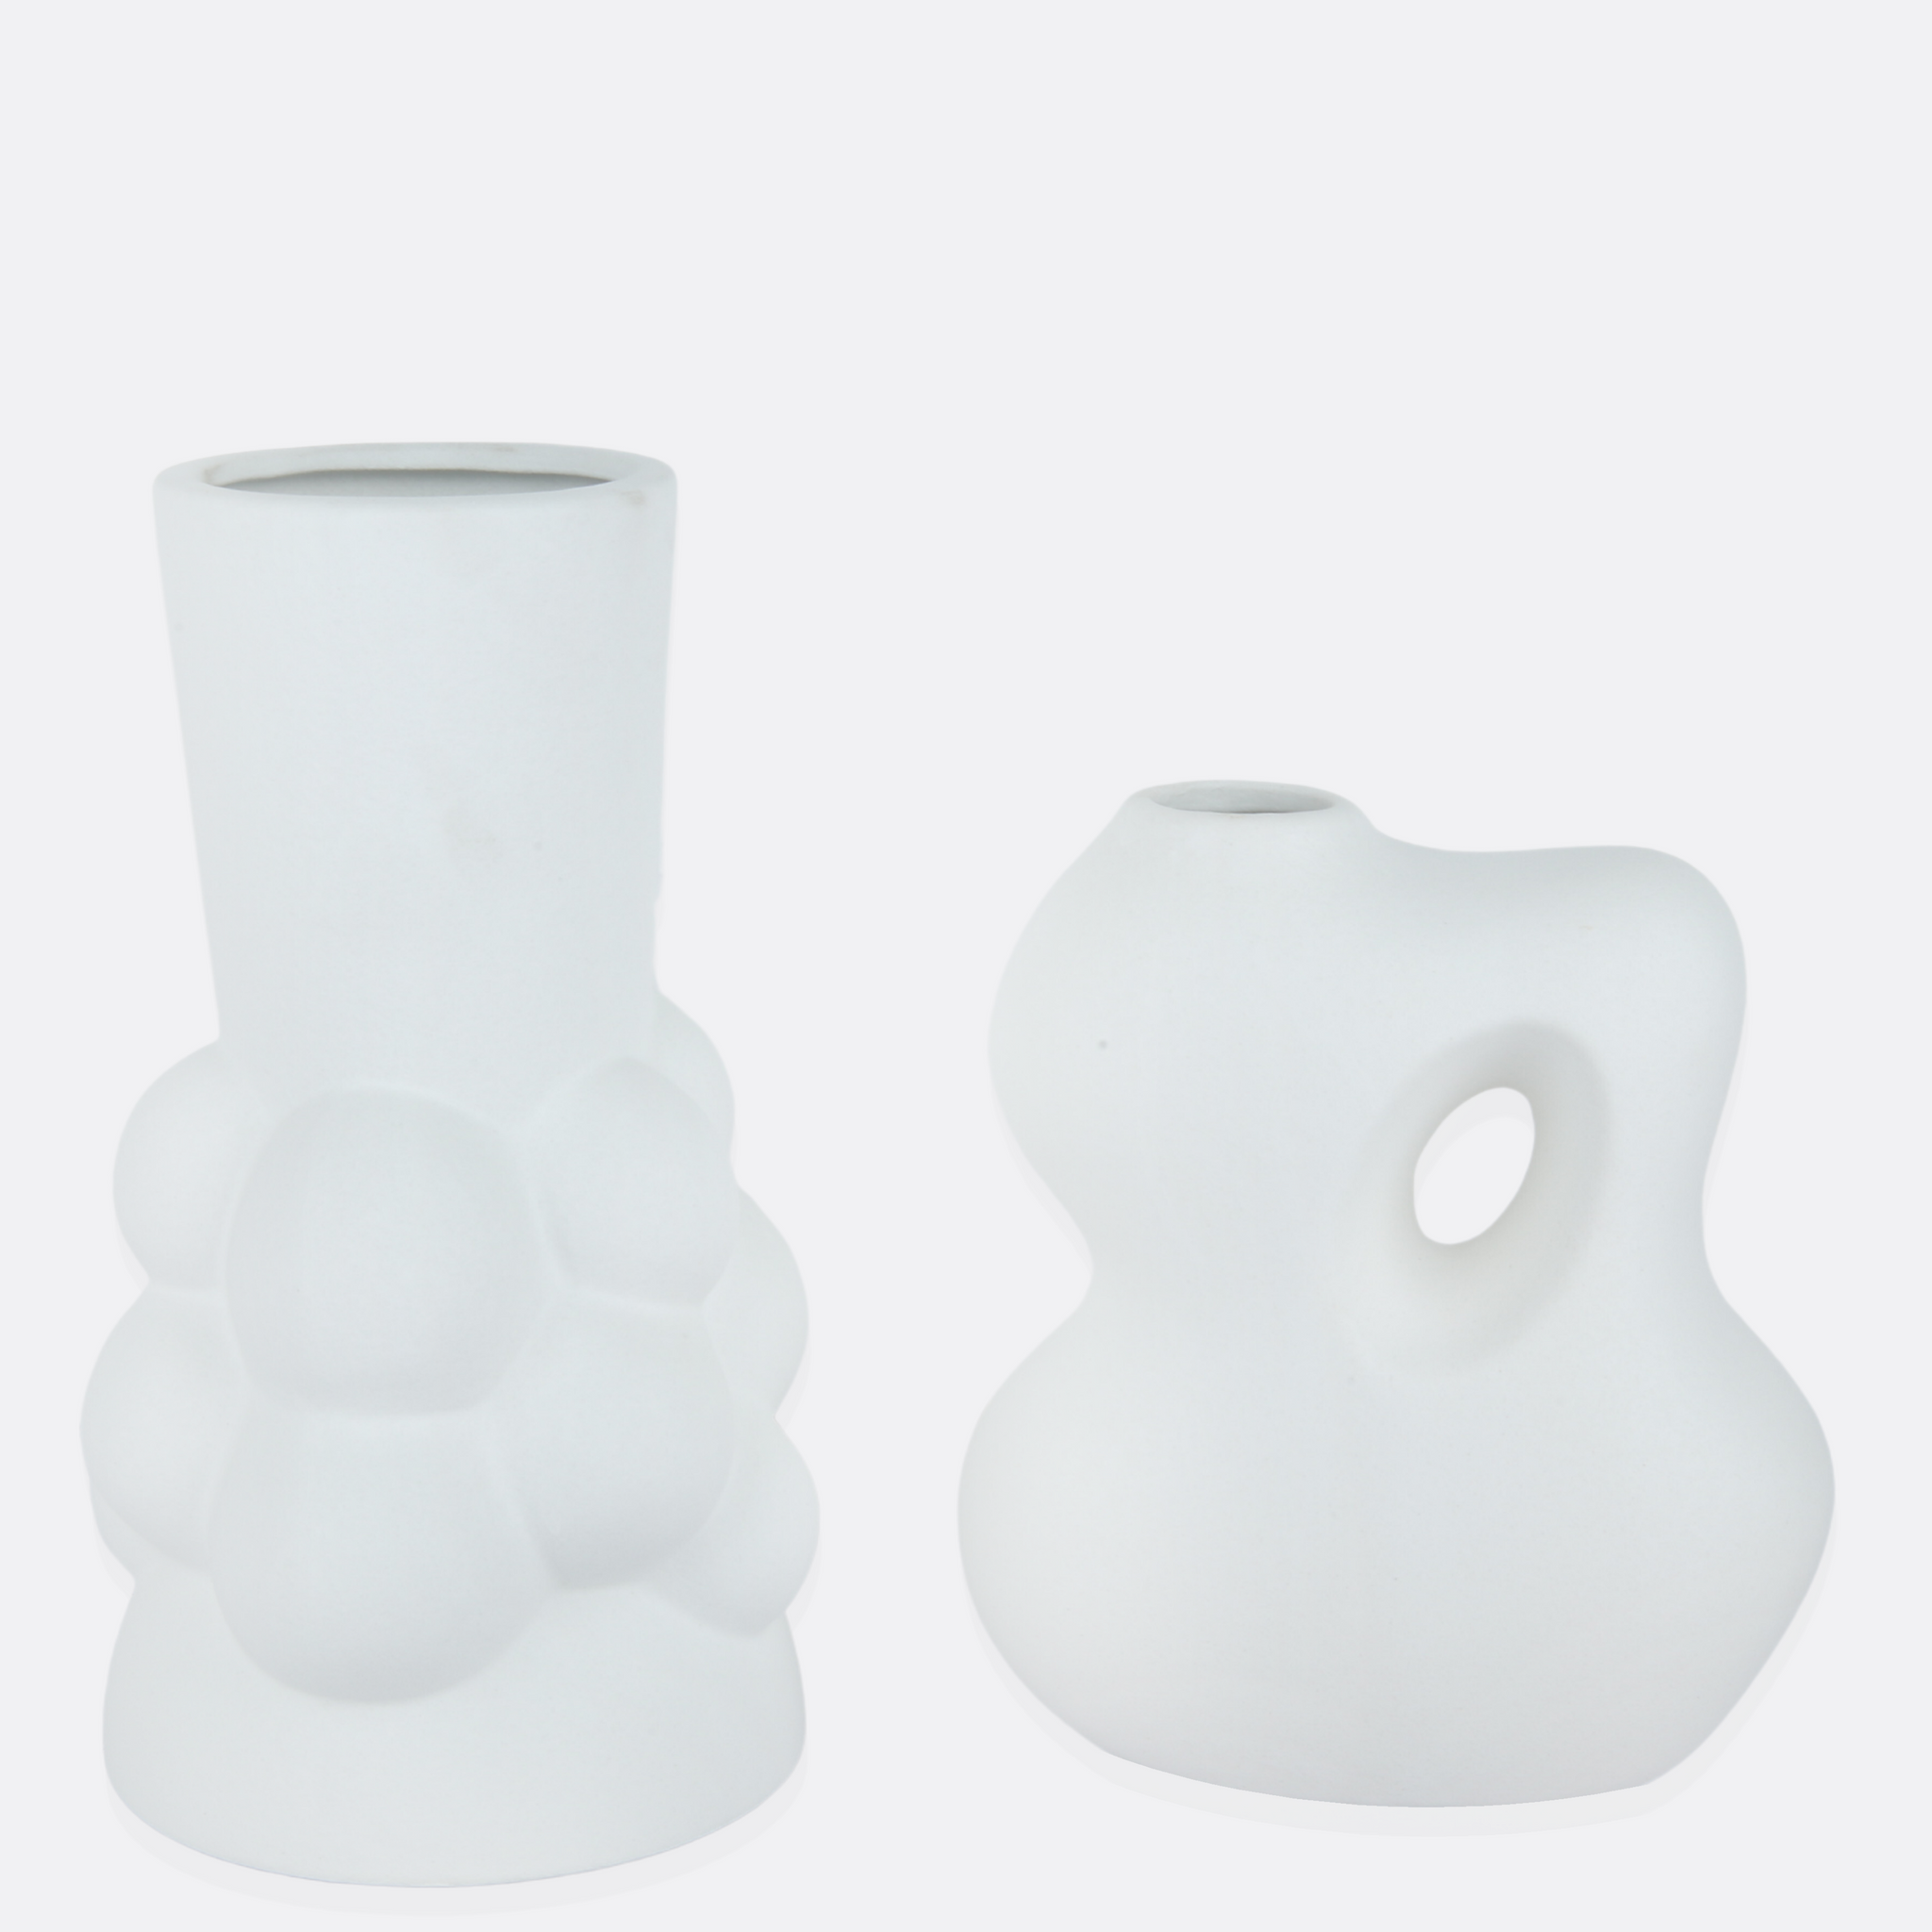 Pious Vases ( 2 Styles )